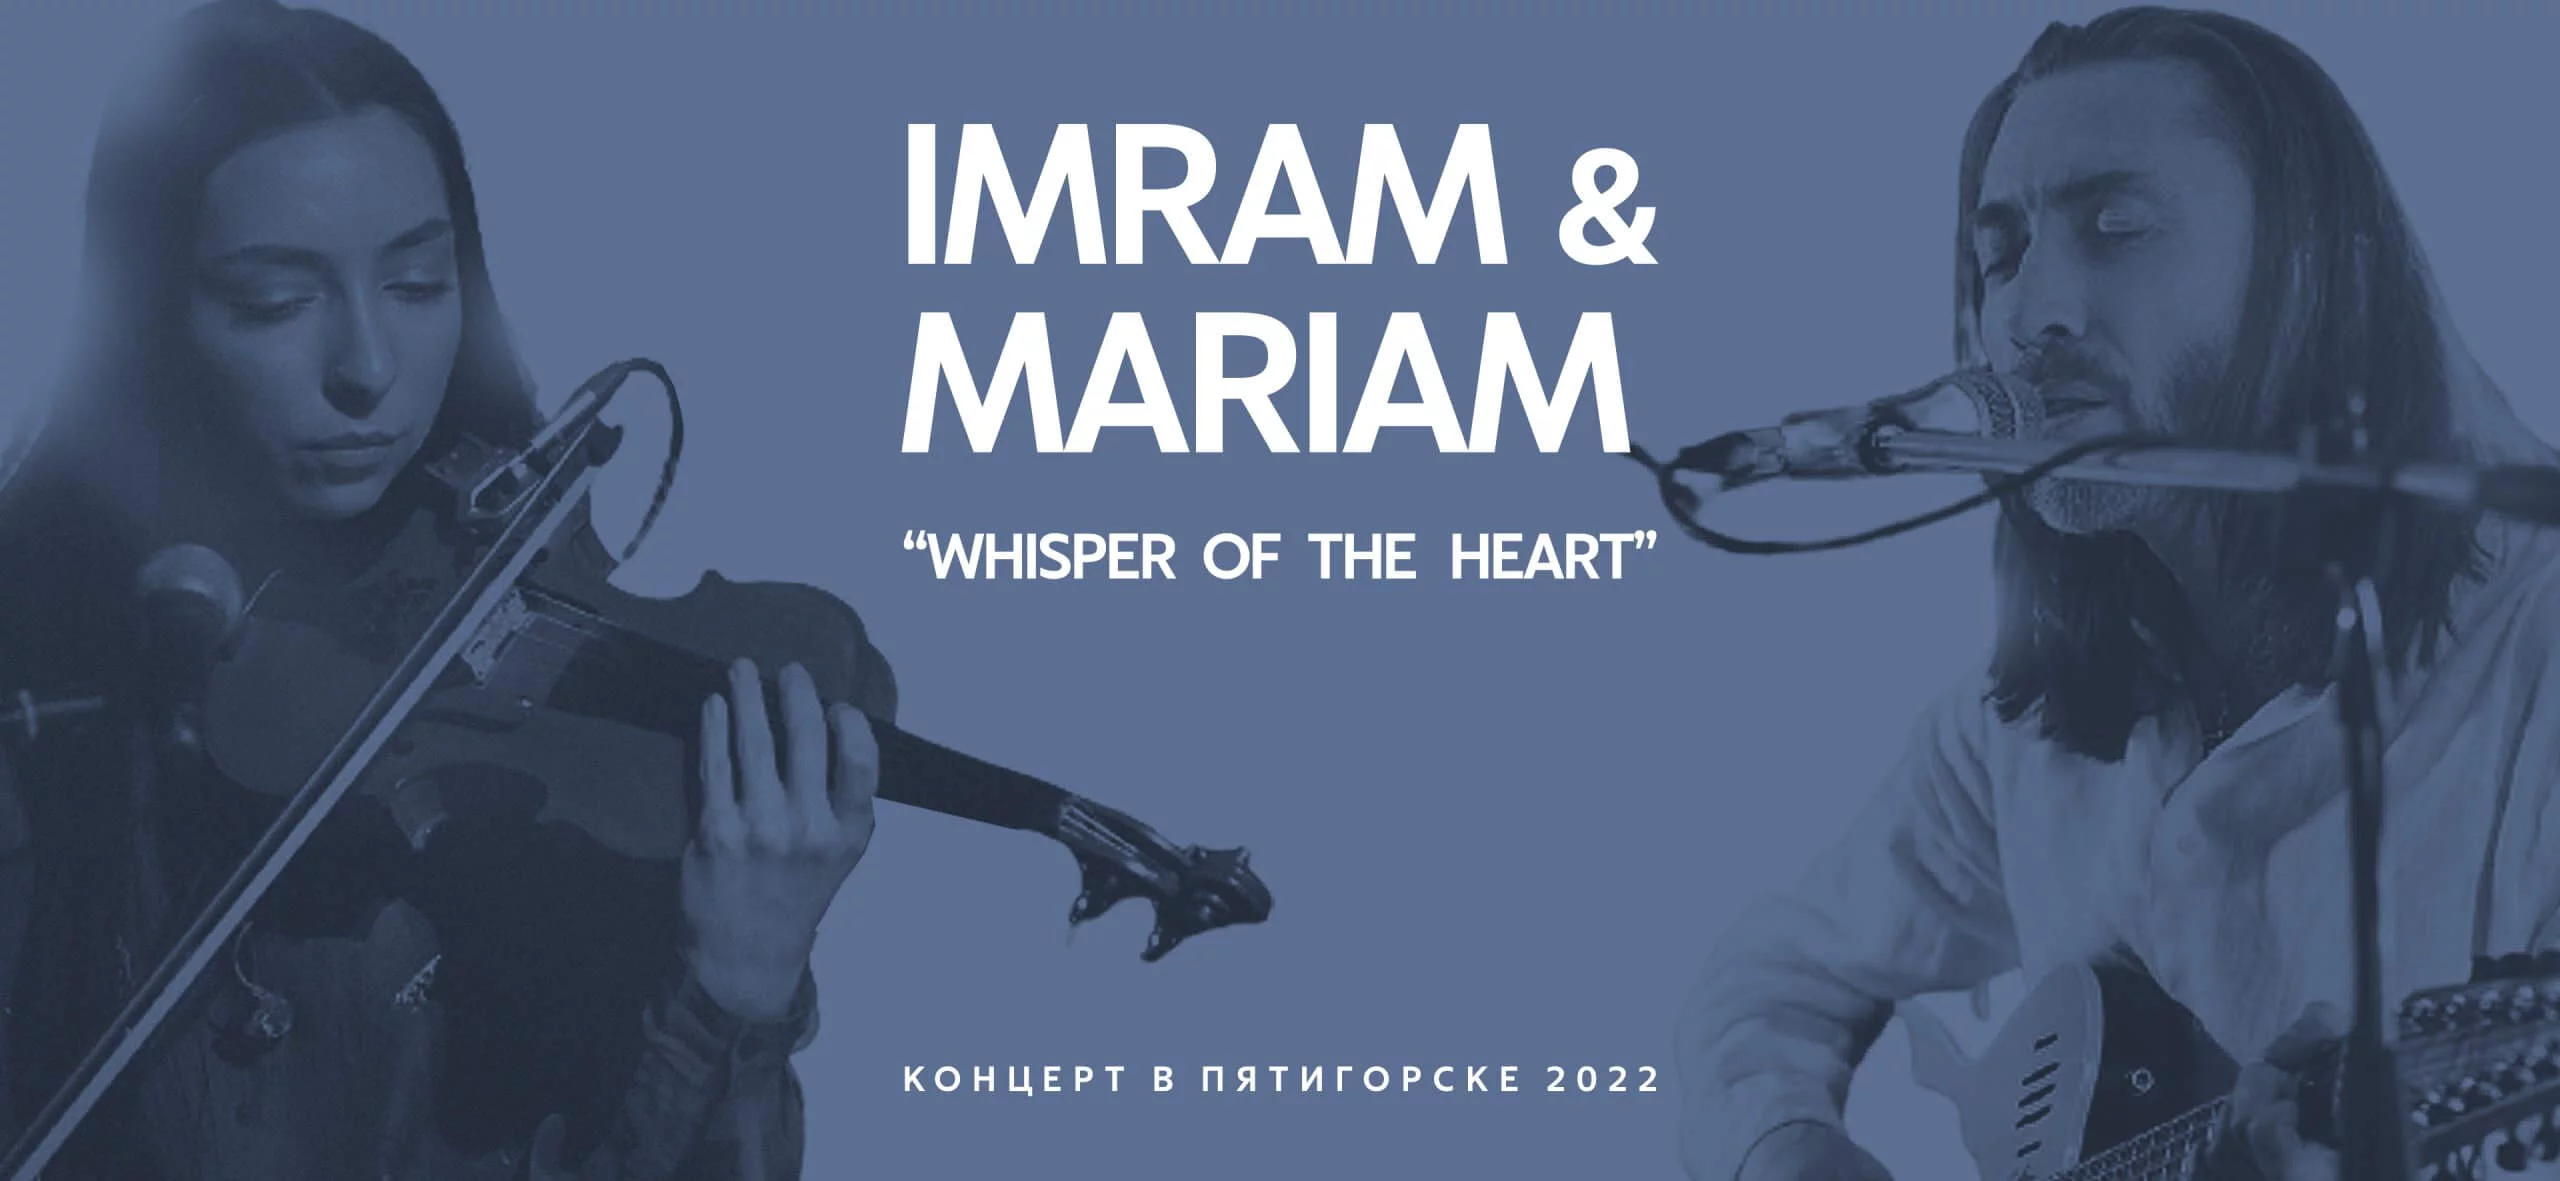 Imram-mariam_2022_3840x1772_desktop